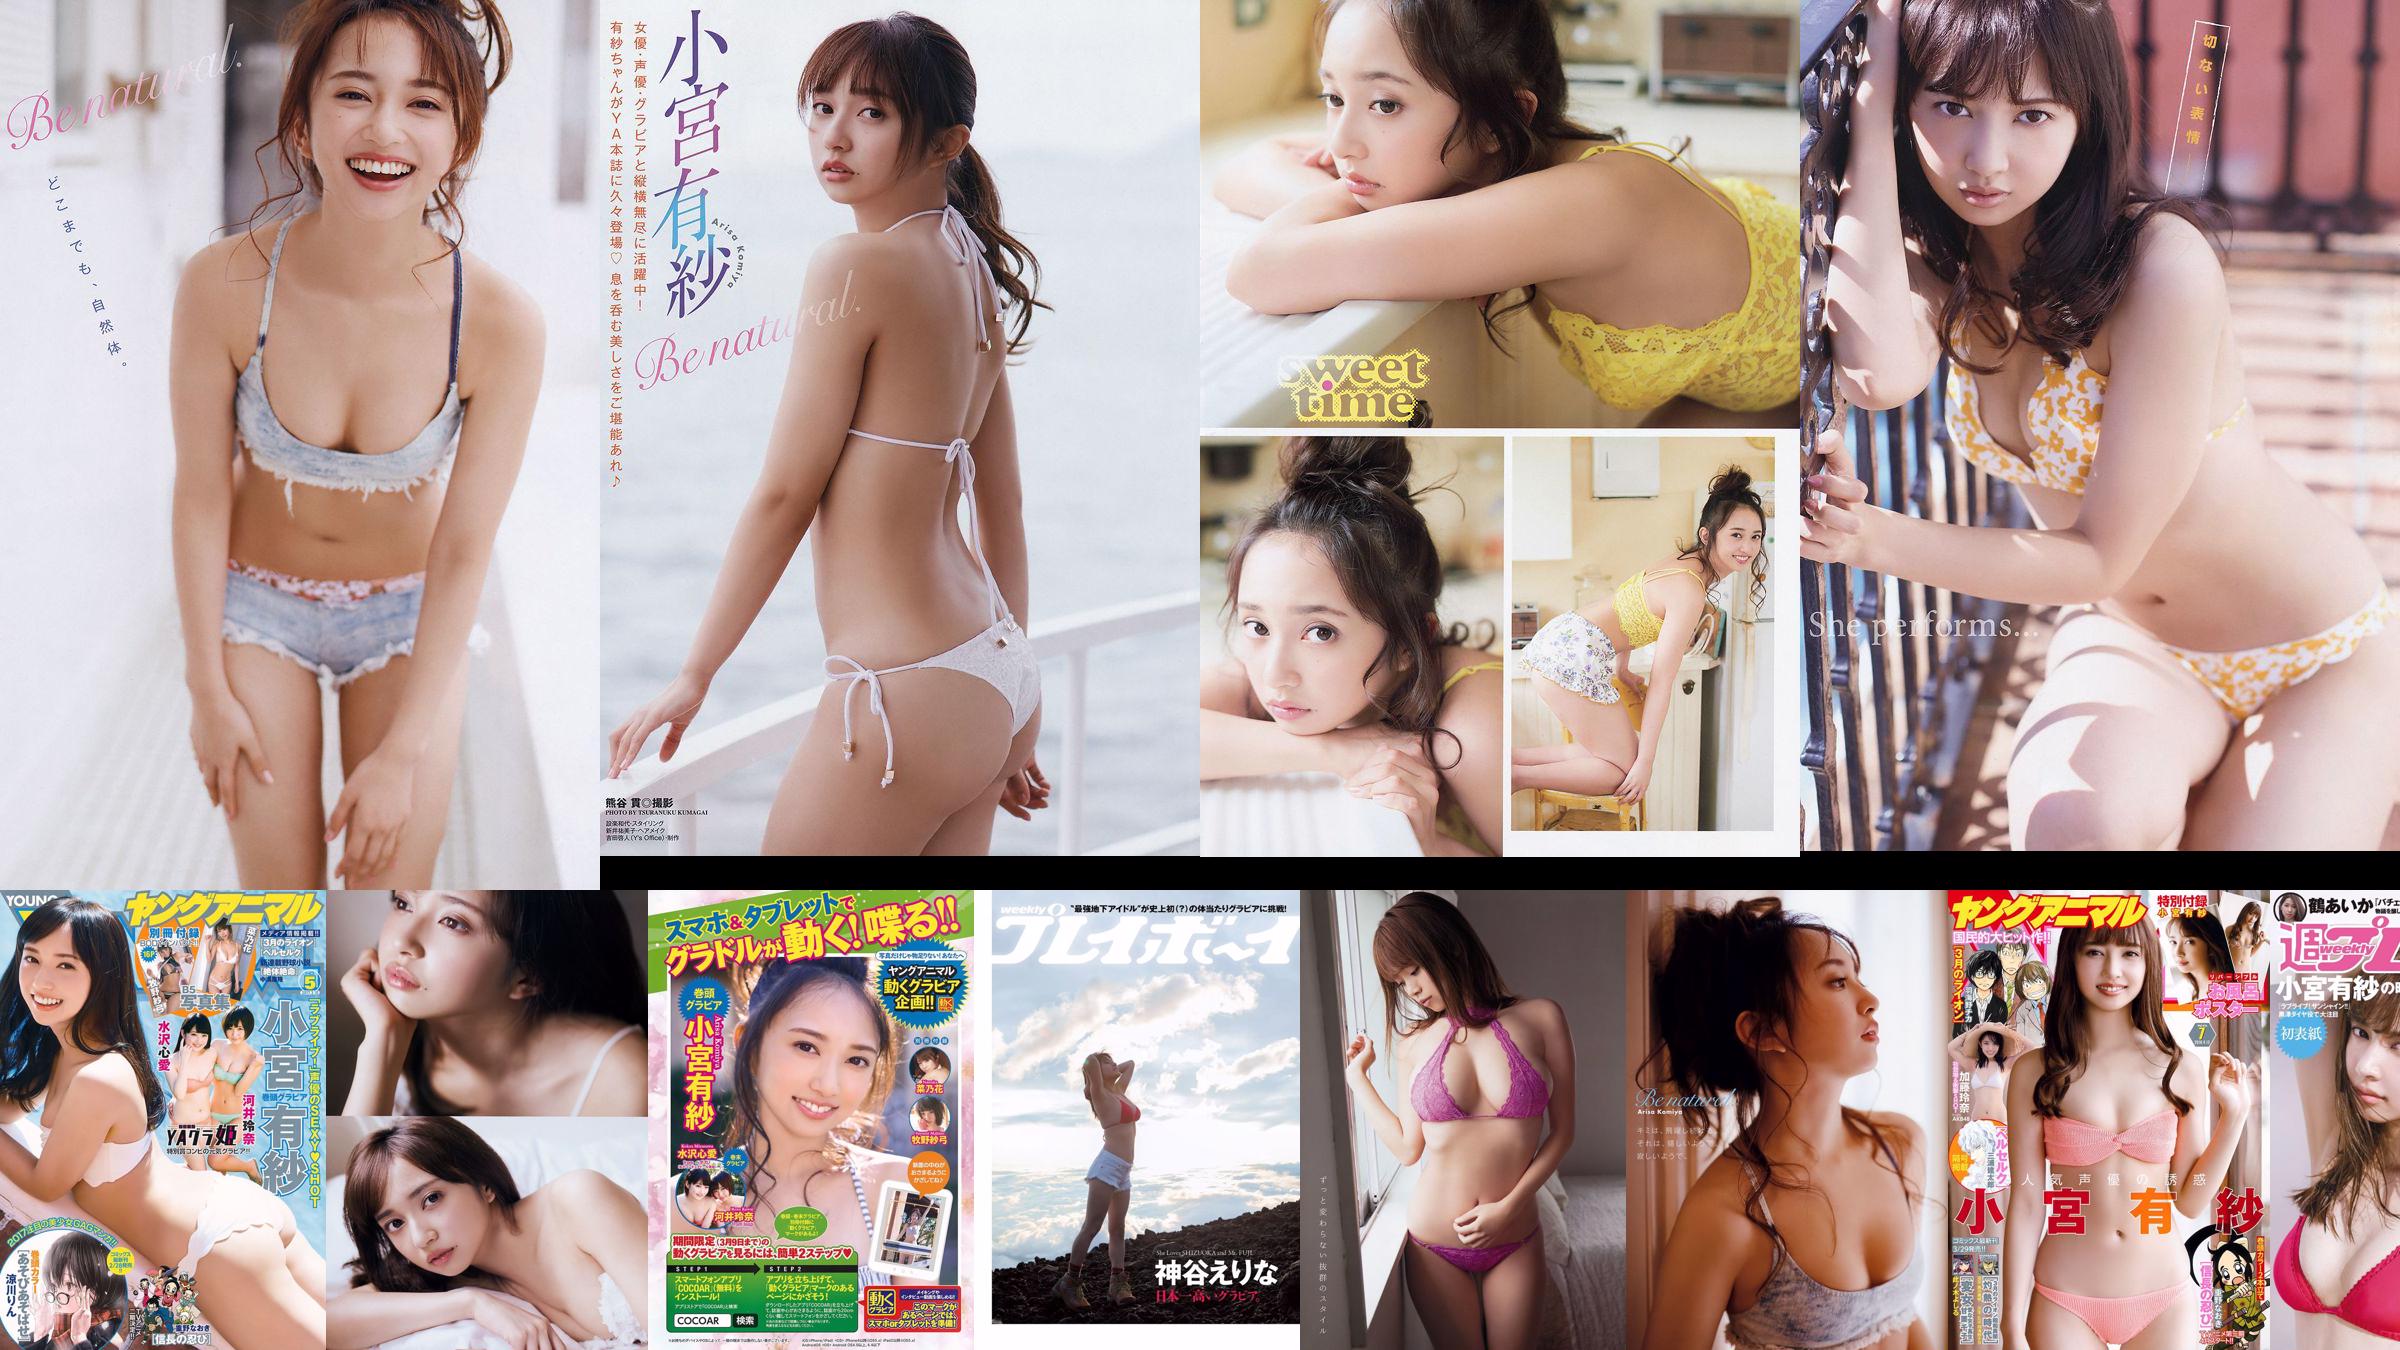 Arisa Komiya Aika Tsuru Sayaka Isoyama Kasumi Arimura Rina Otomo Sei Shiraishi Erina Kamiya [Weekly Playboy] 2017 No.41 Photographie No.59388e Page 1